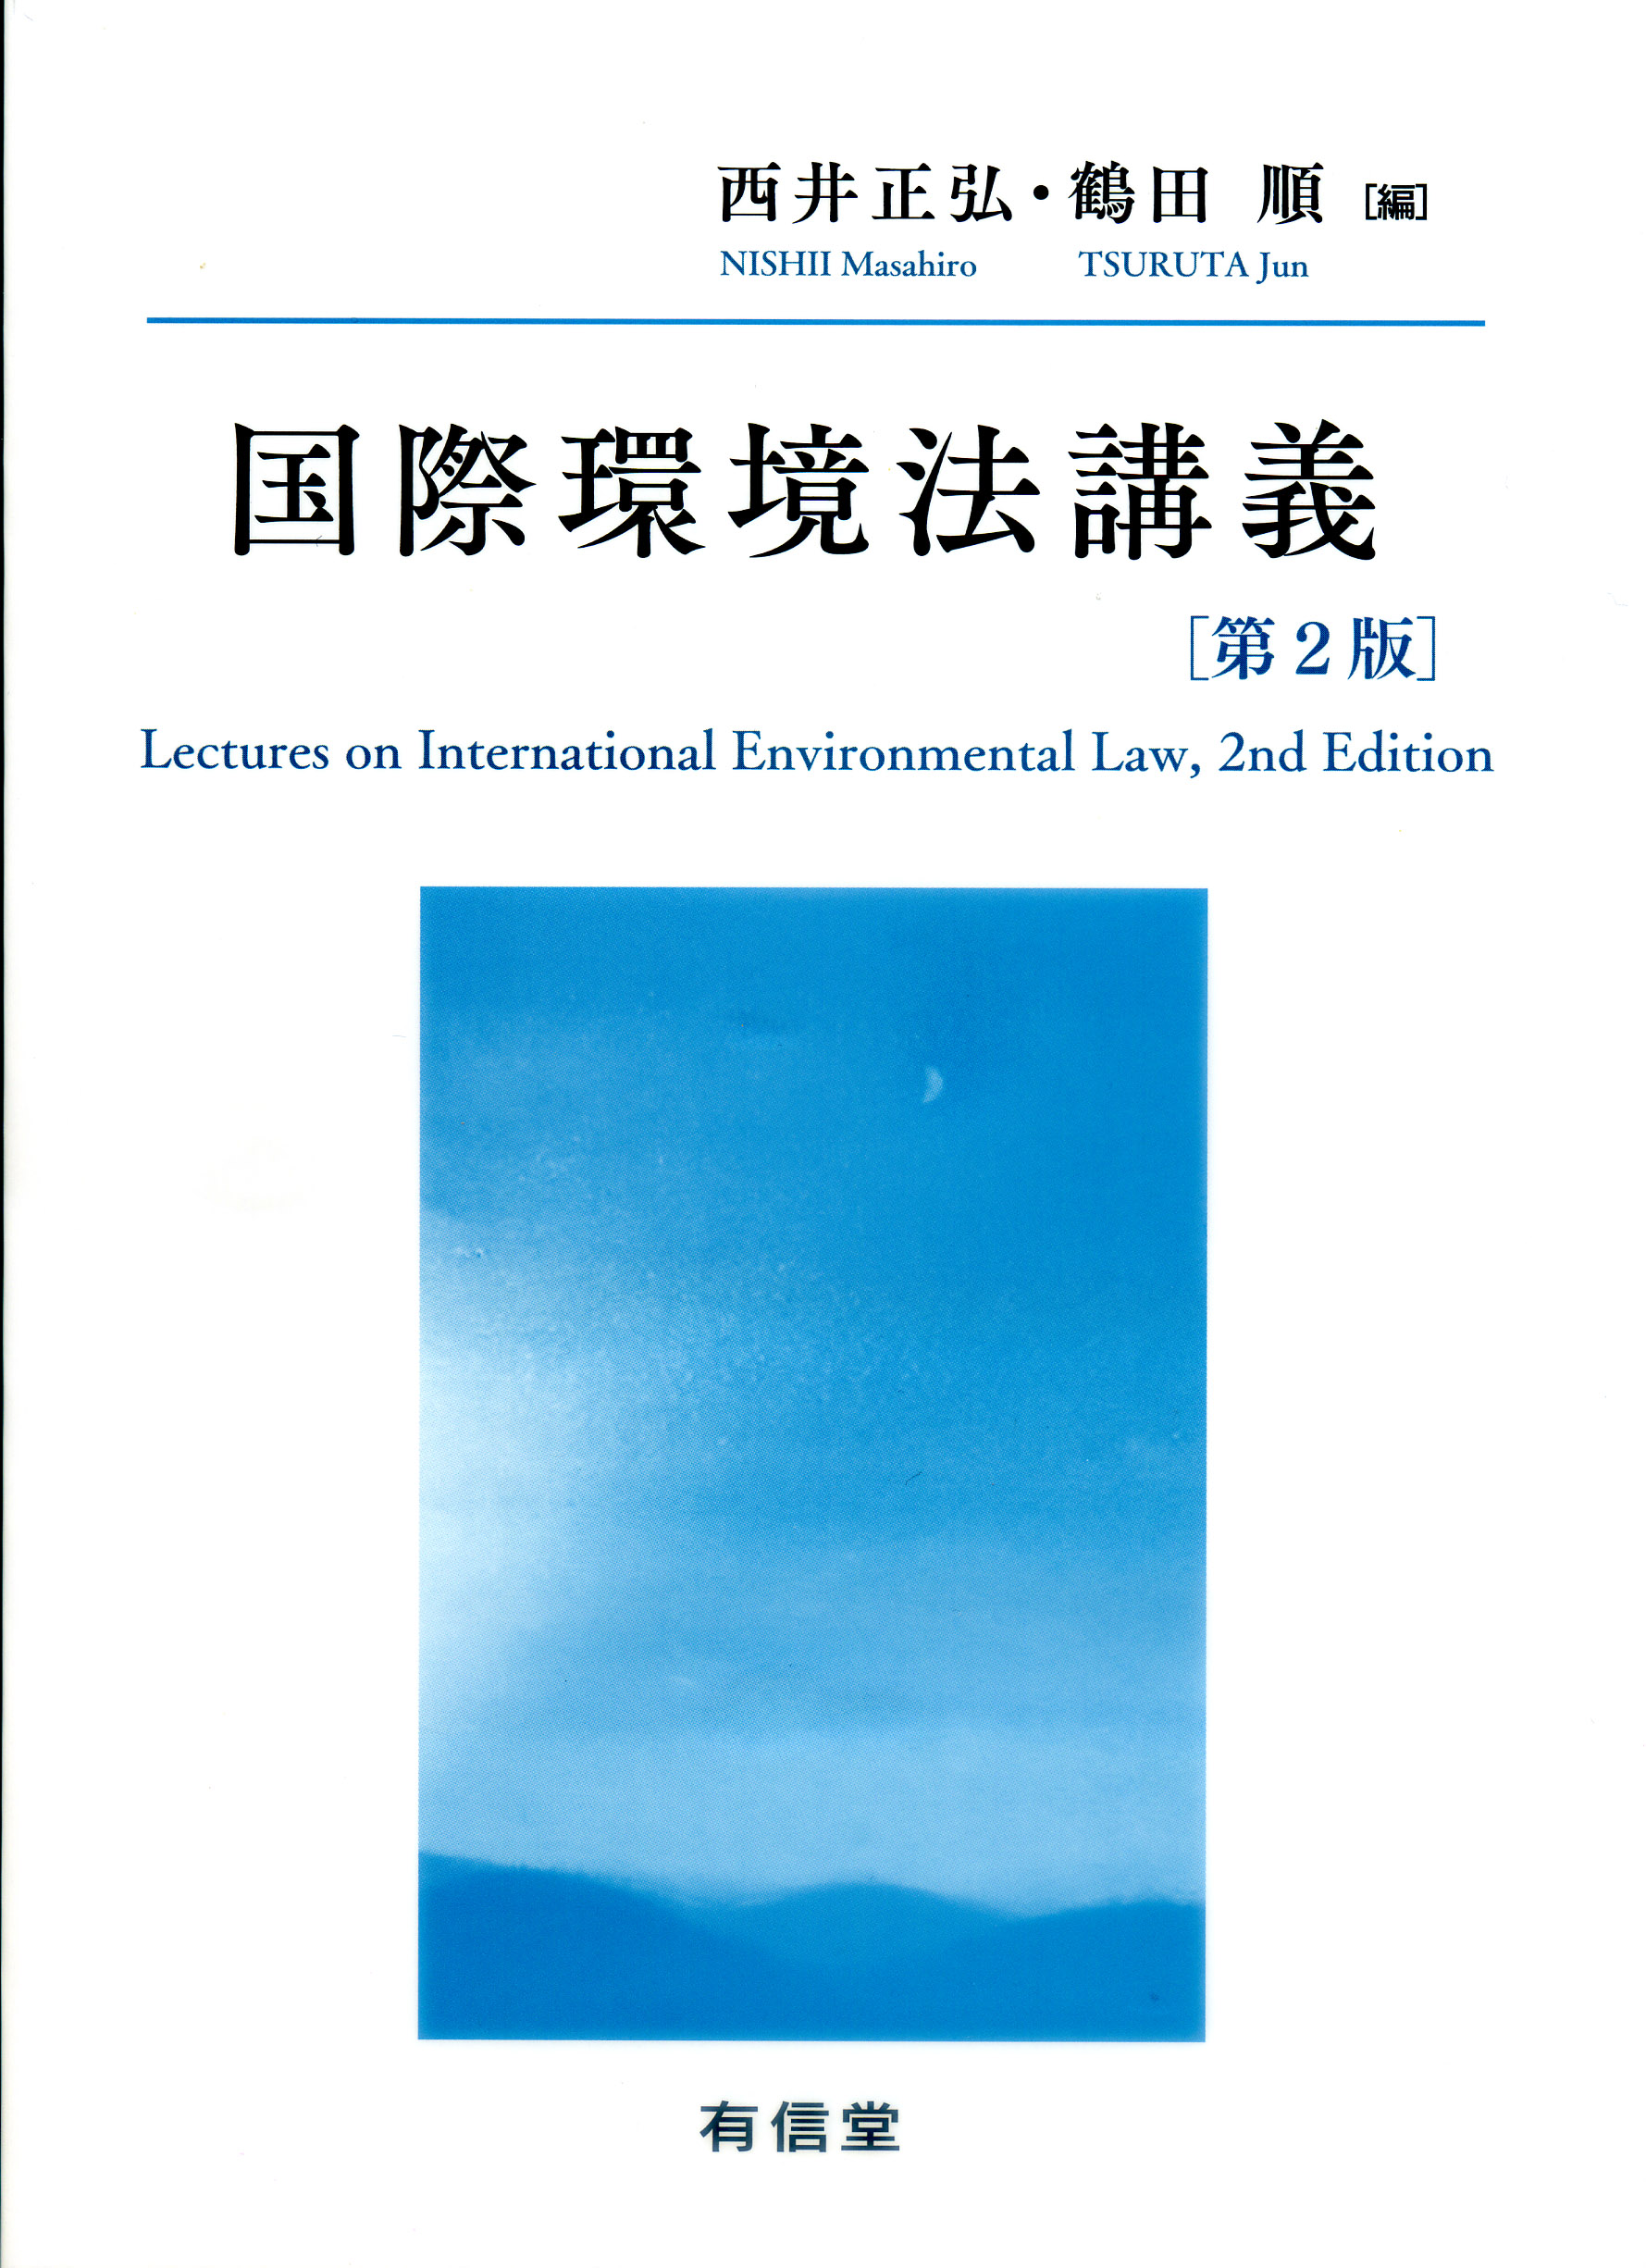 国際環境法講義〔第2版〕の商品画像